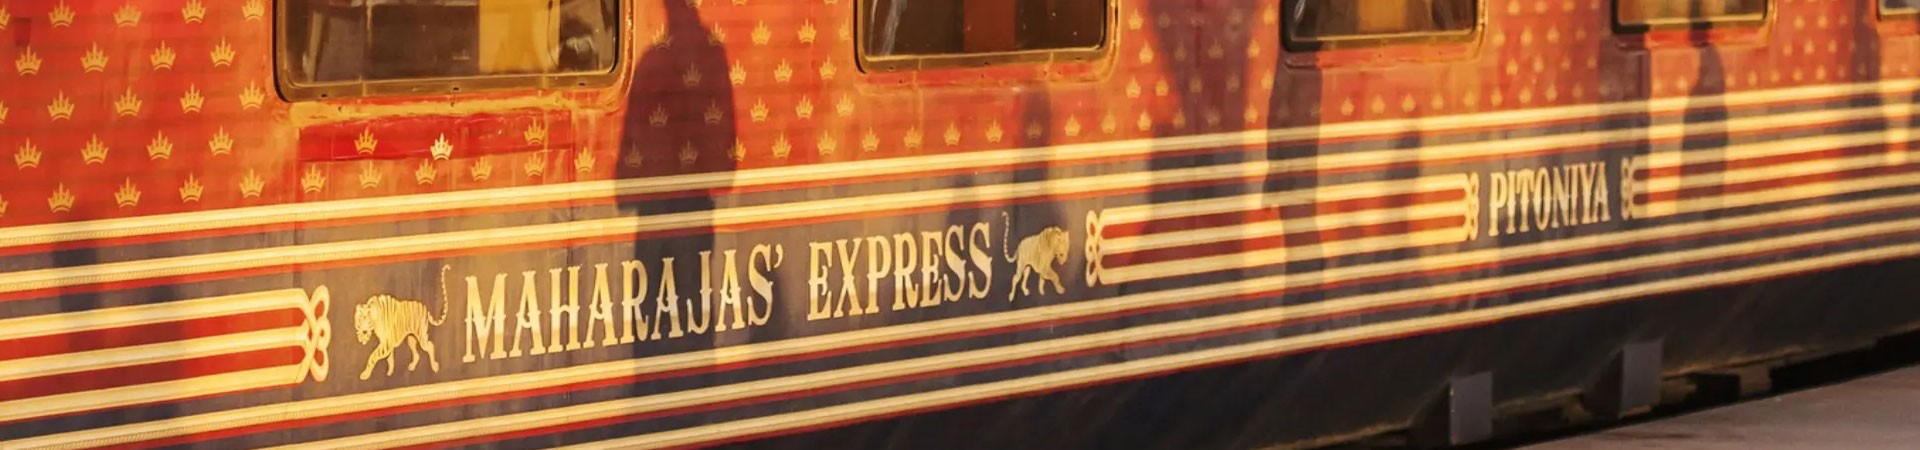 Maharaja Express – The Indian Panorama